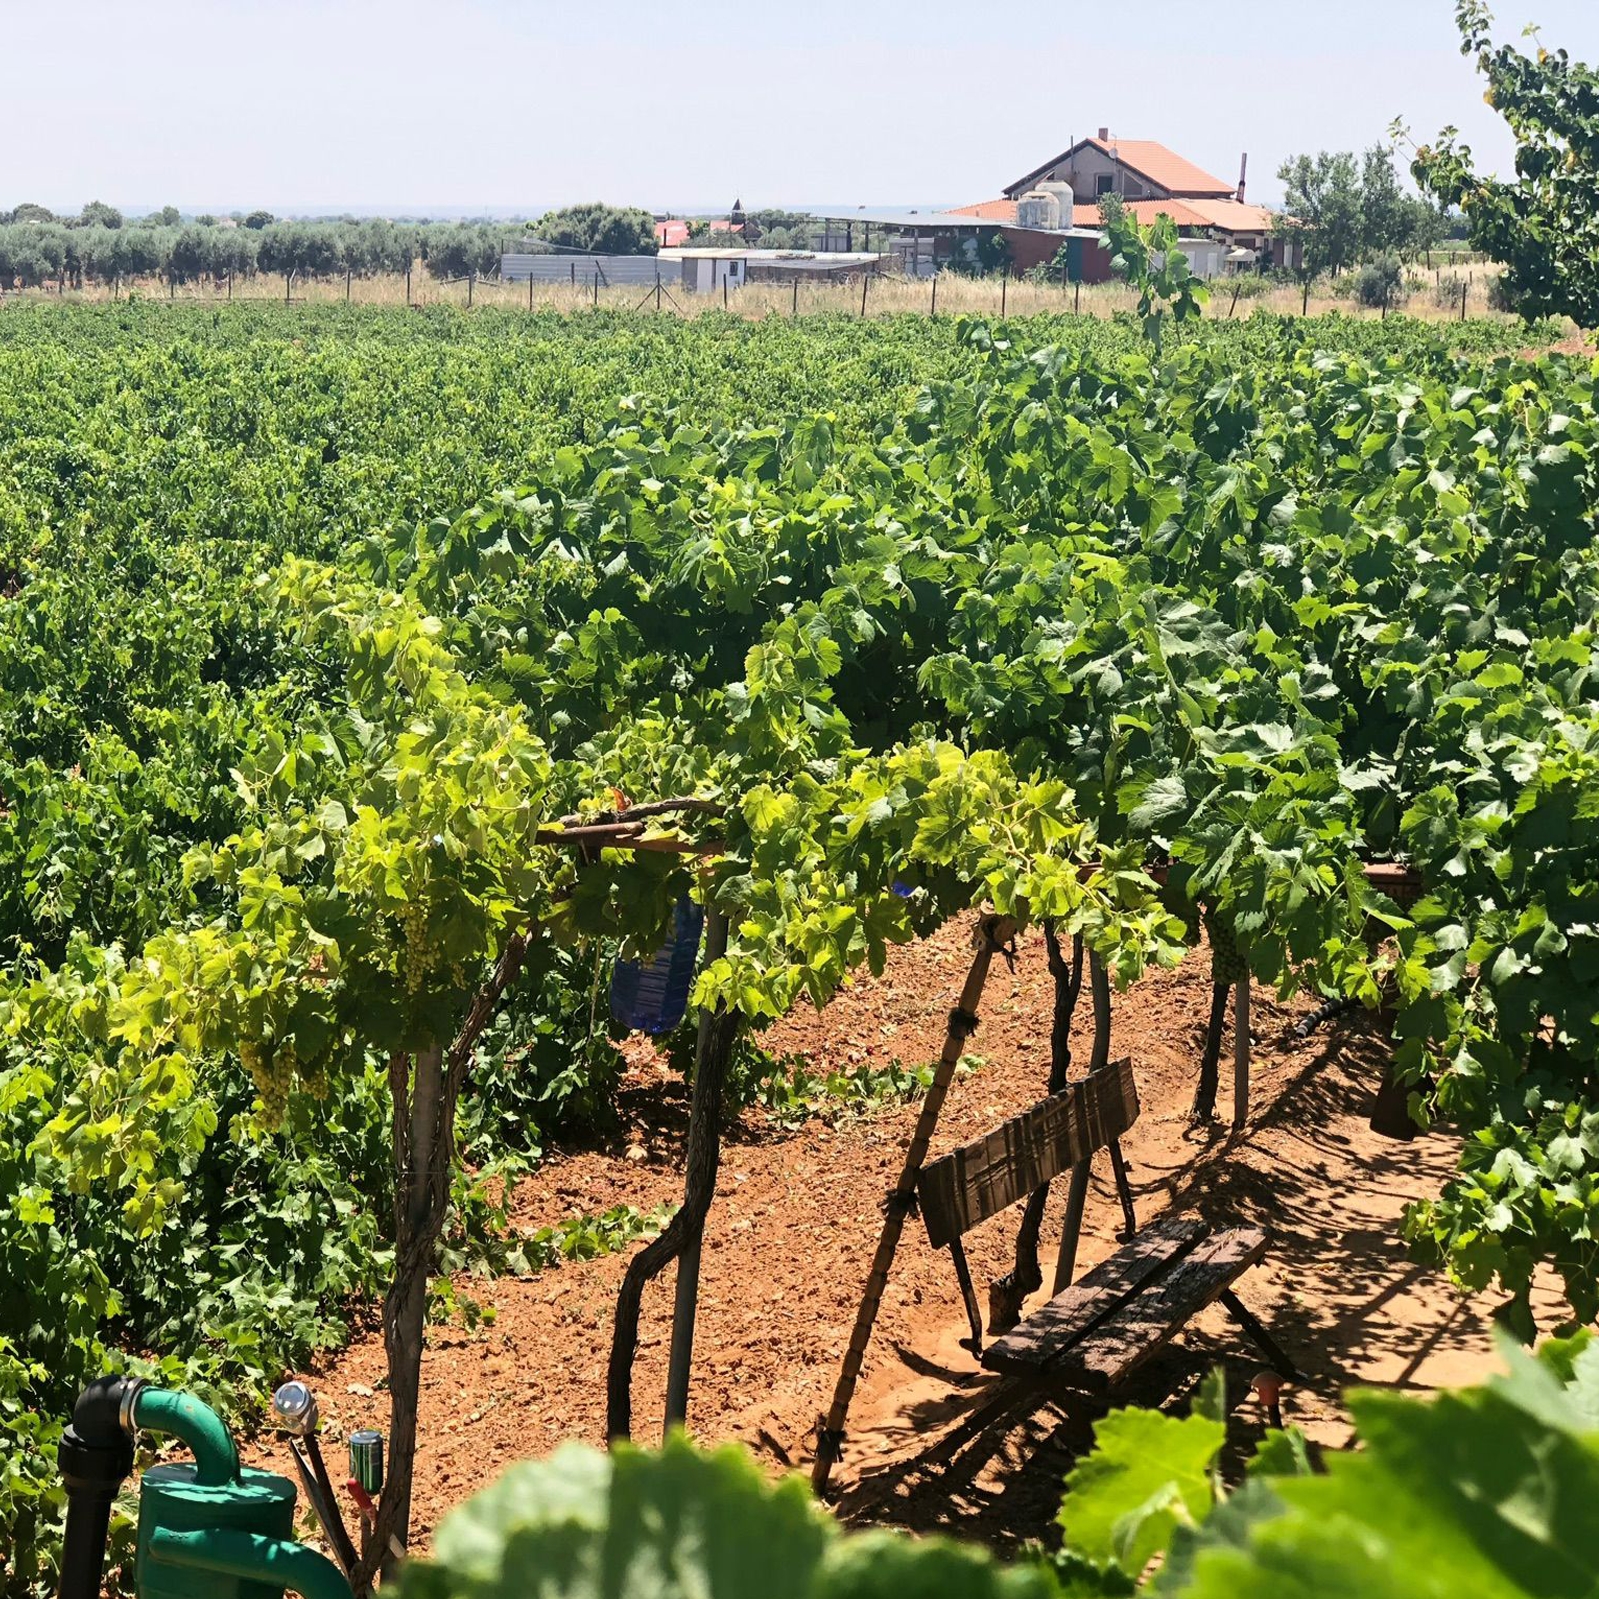 Bodegas San Isidro de Pedro Muñoz - Carril de Cotos Blanco Semidulce IGP Vino de la Tierra de Castilla 75cl, 6uds